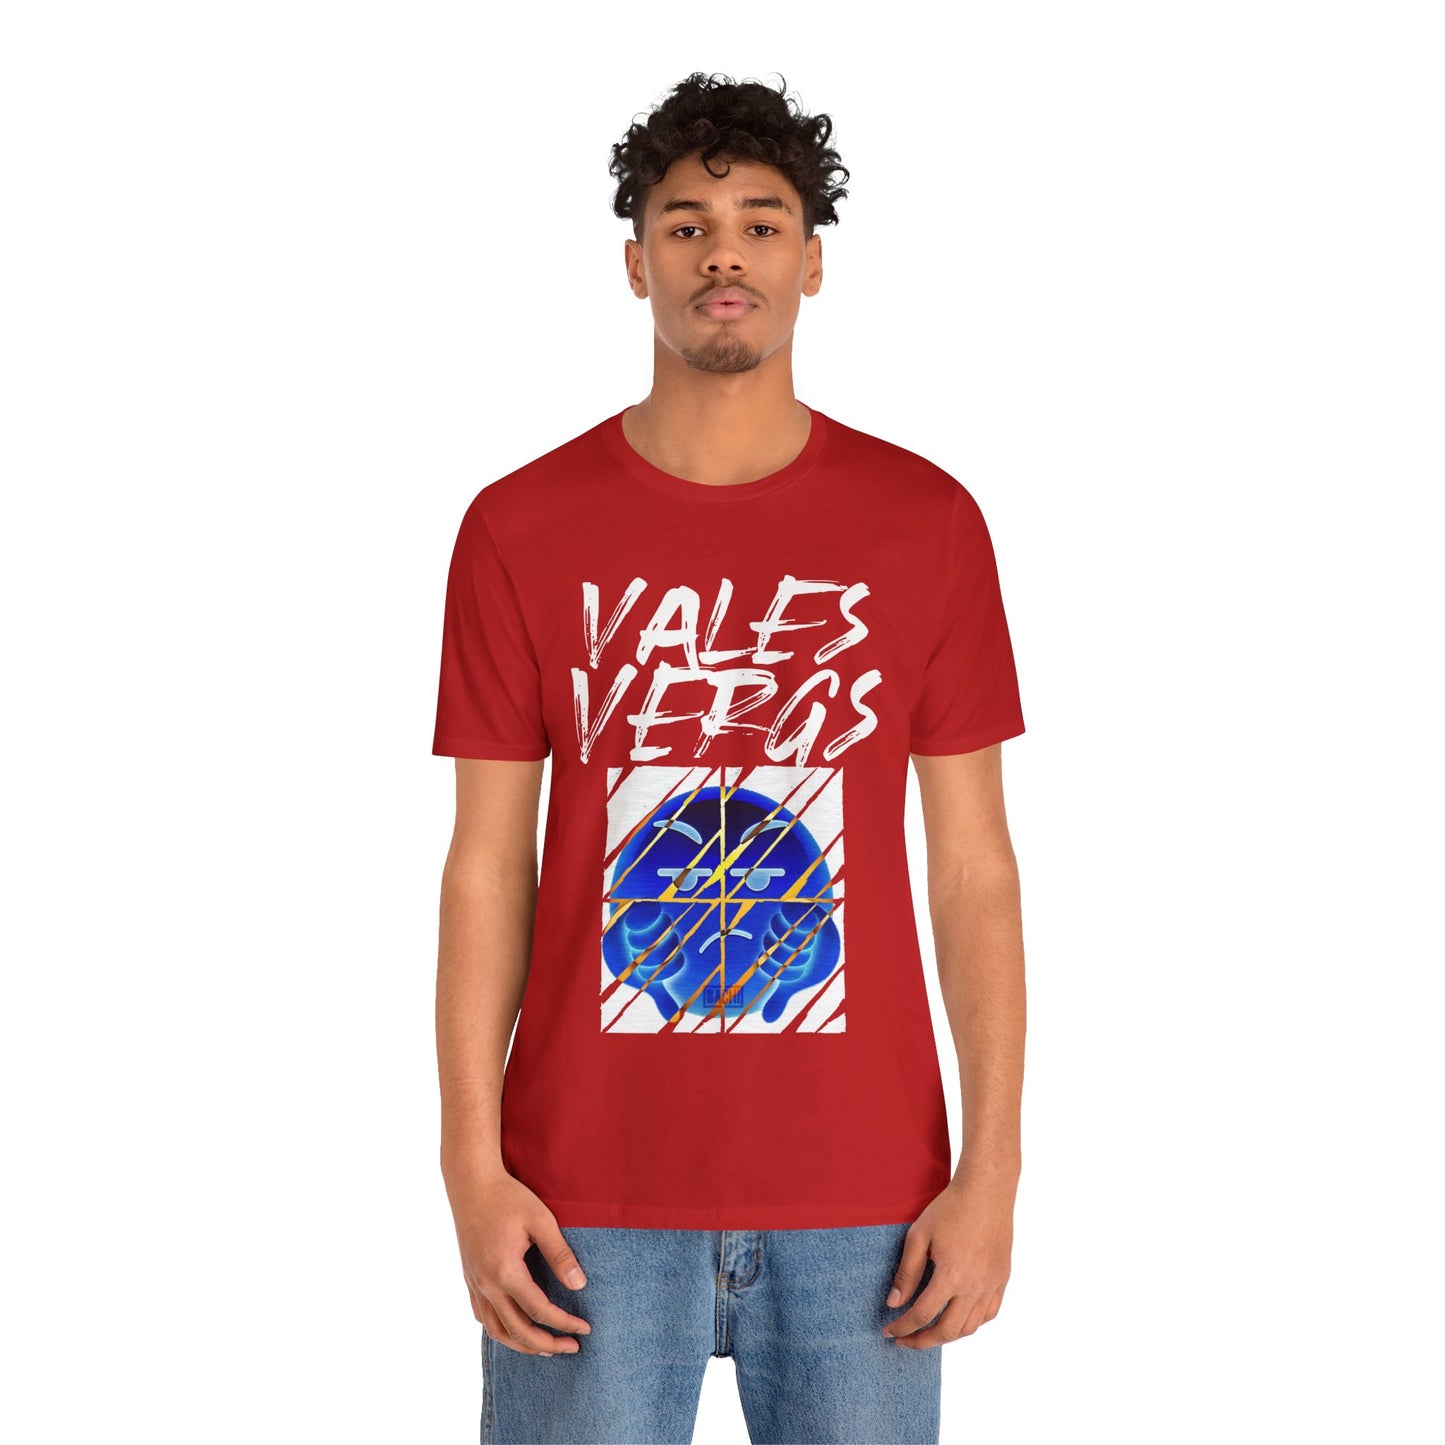 Unisex T-Shirt Vales Verga